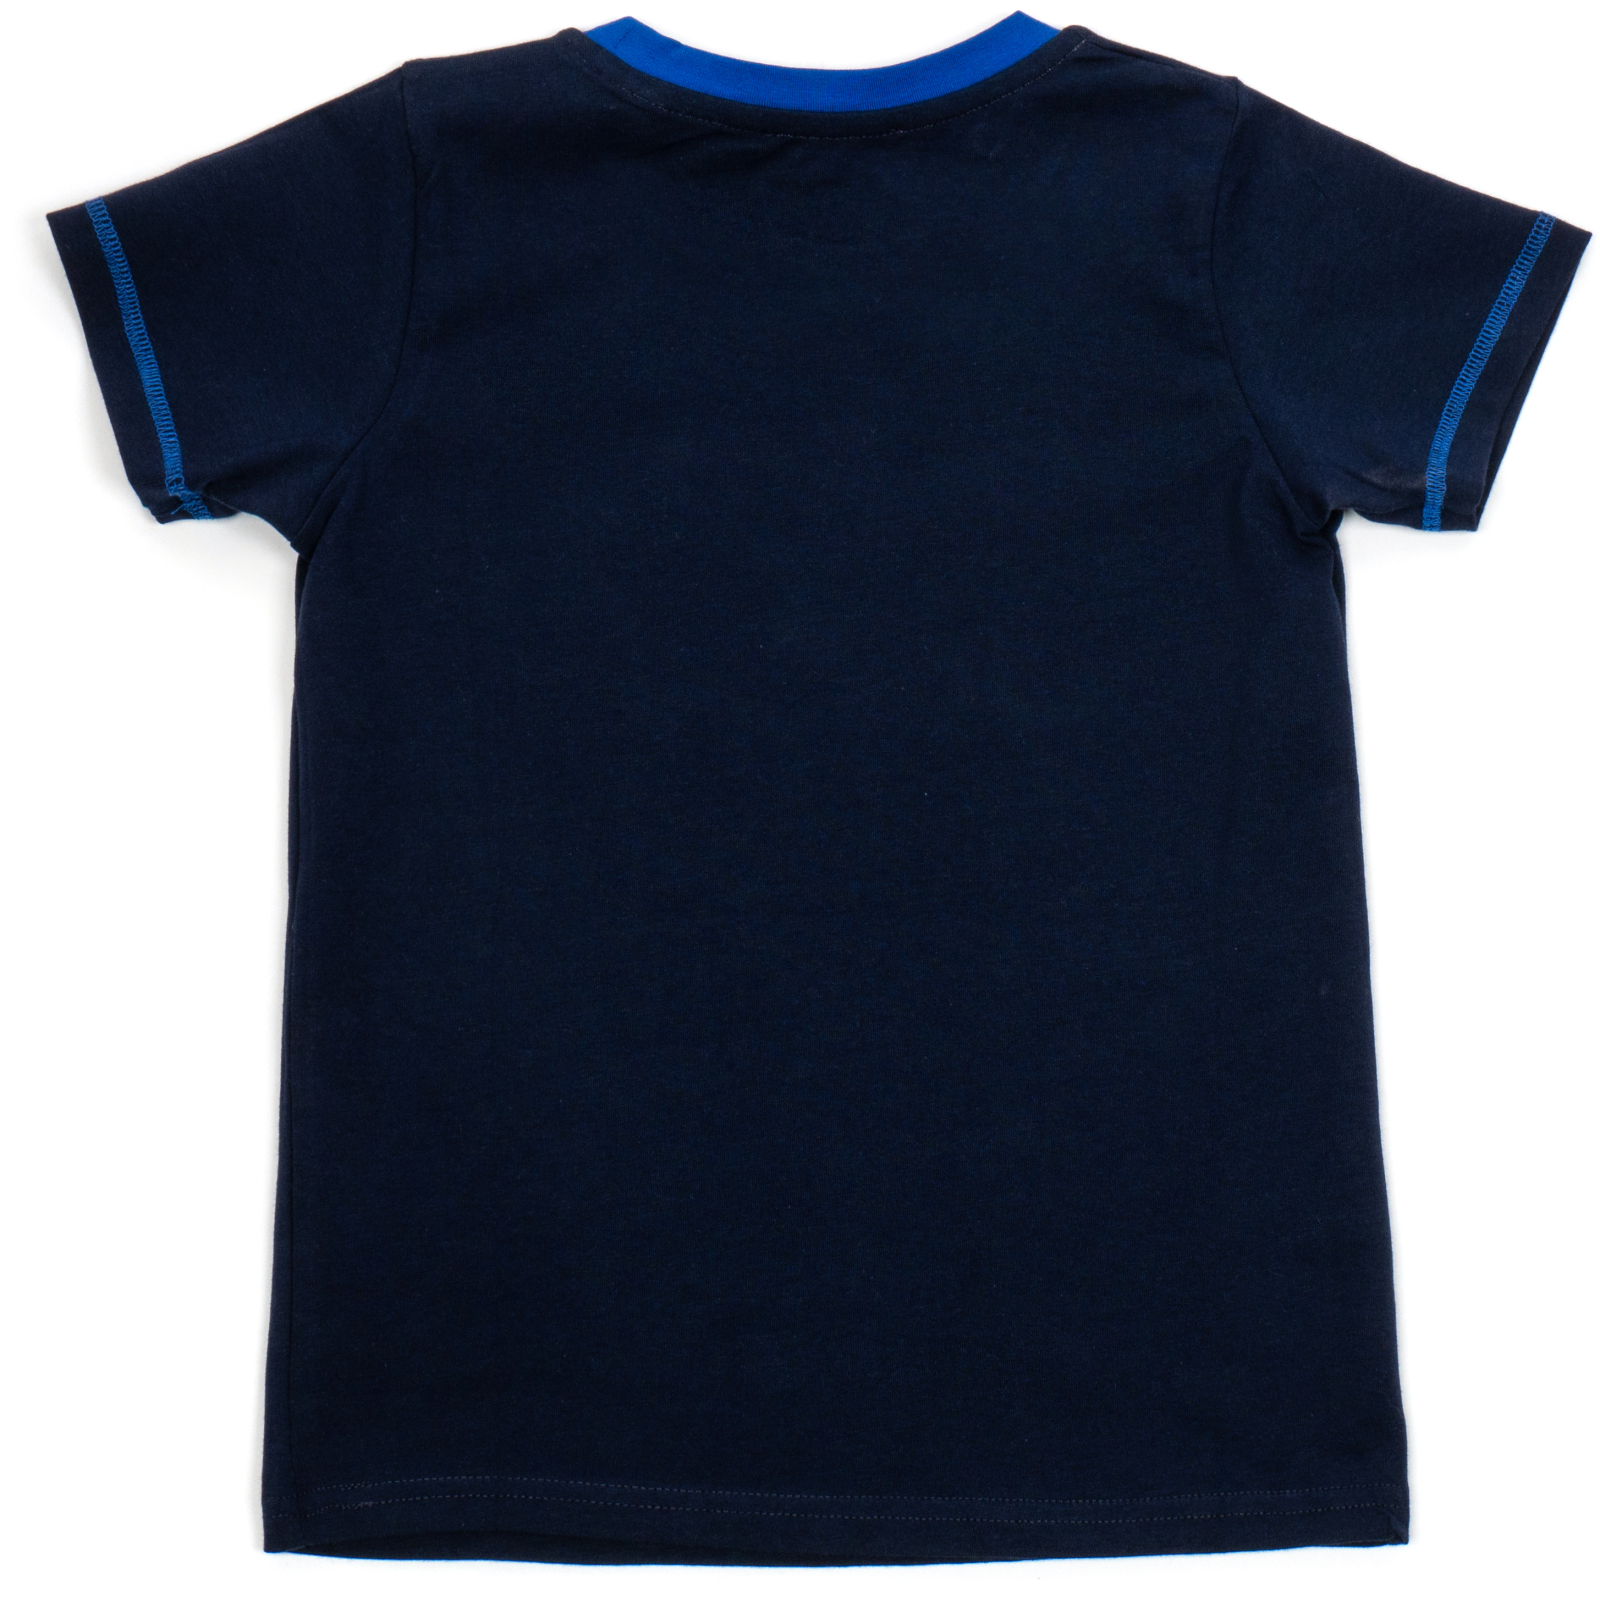 Пижама Matilda с футболкой (11701-2-98B-blue) изображение 5